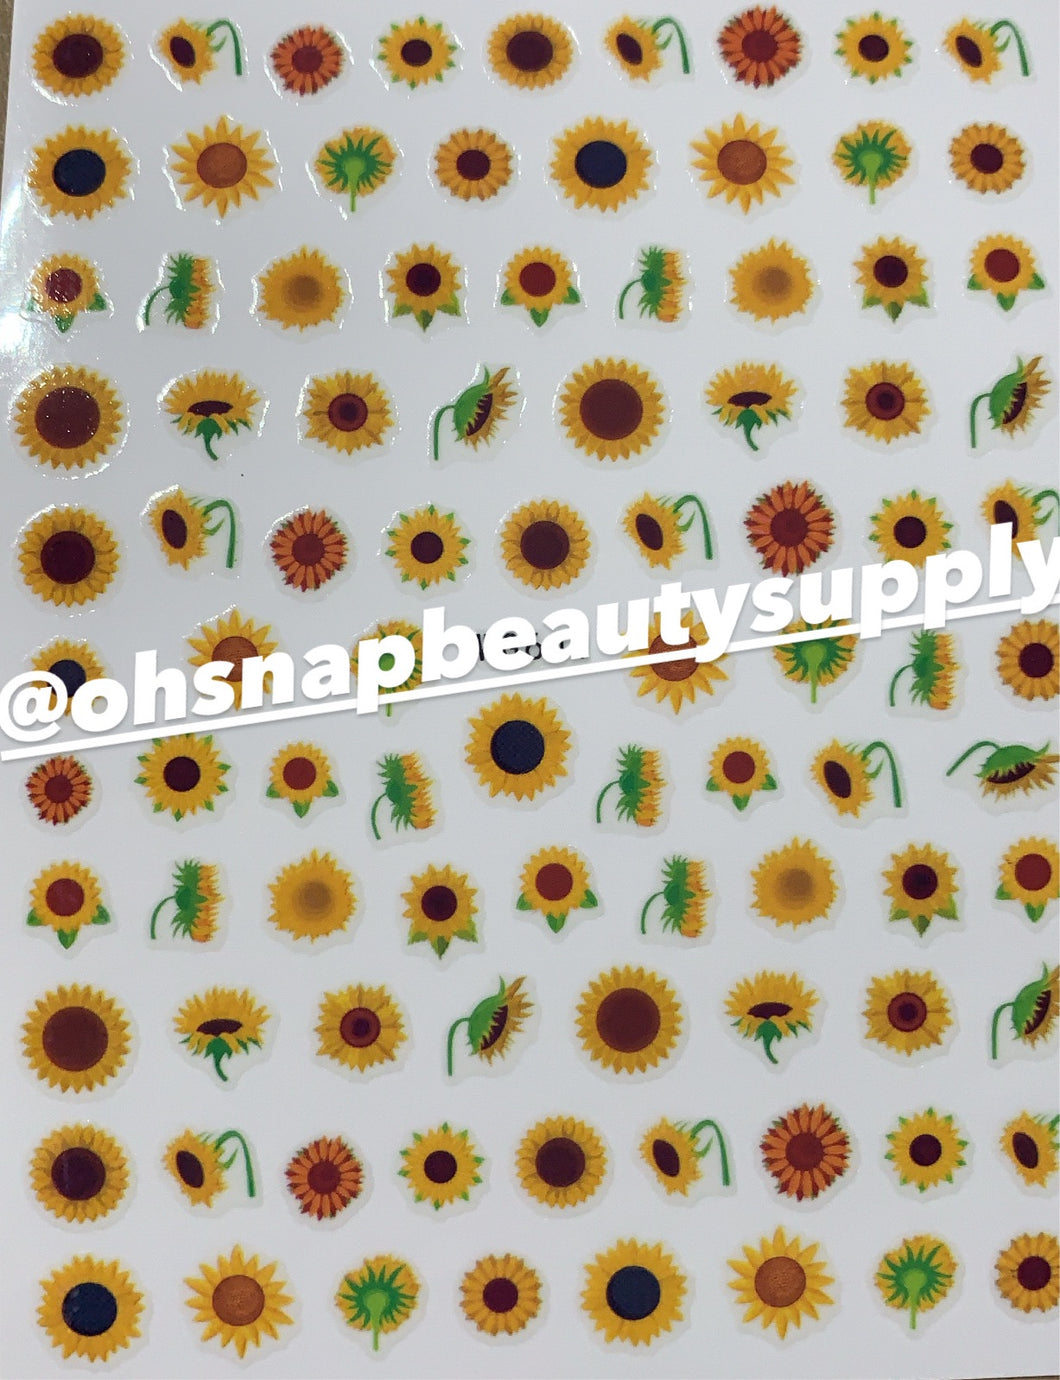 ***Sunflower 641 Sticker